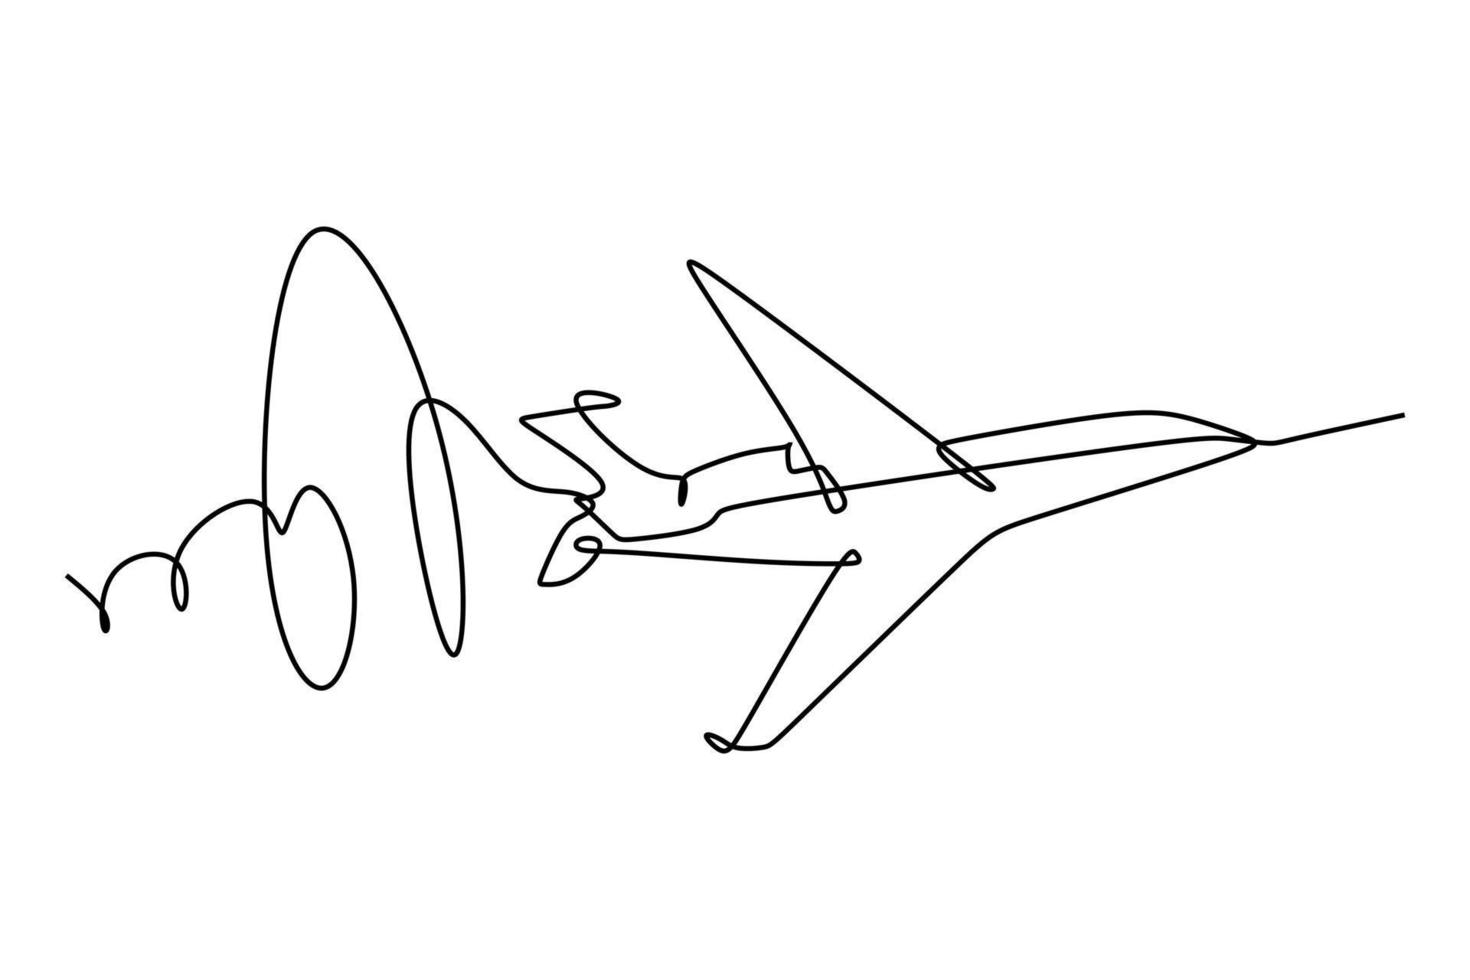 disegno a tratteggio di un aereo a reazione a velocità ultrasonica. illustrazione vettoriale per il concetto di trasporto e tecnologia